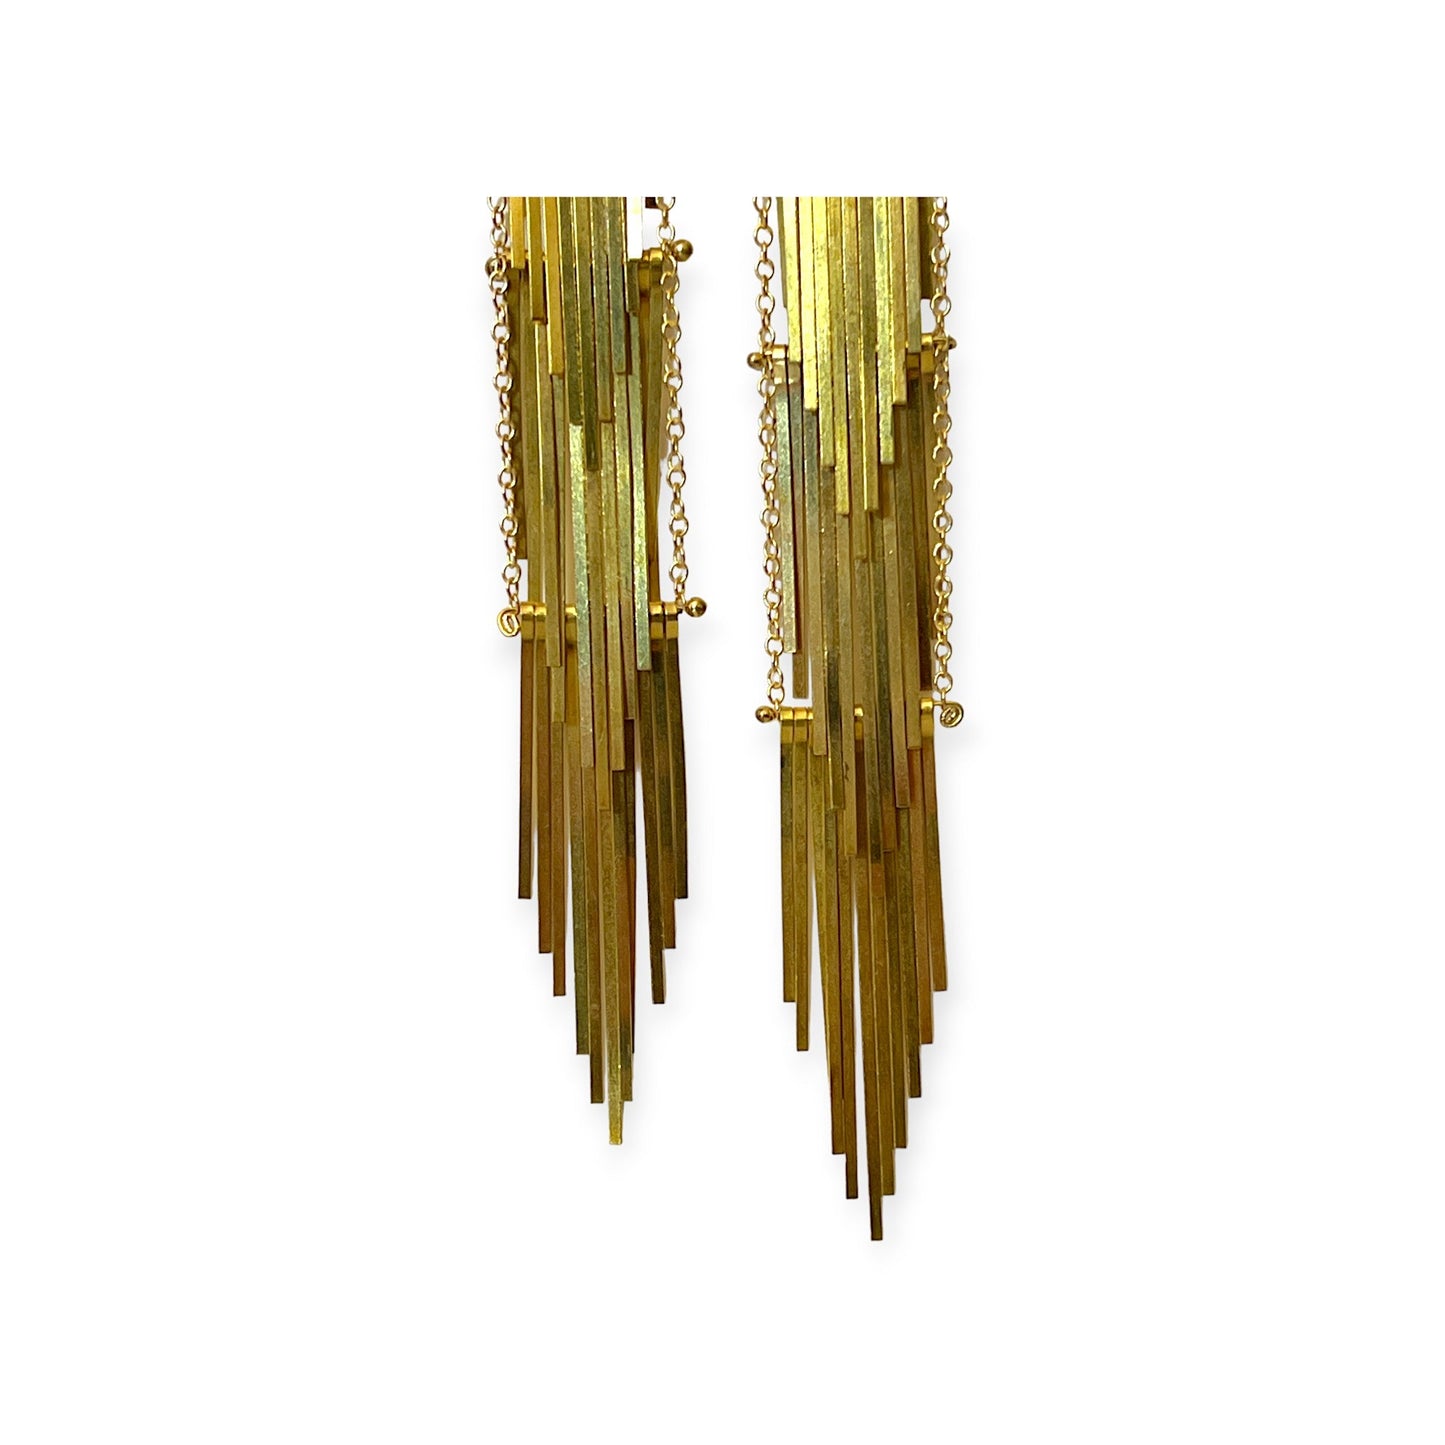 Waterfall tiered metal drop earrings - Sundara Joon